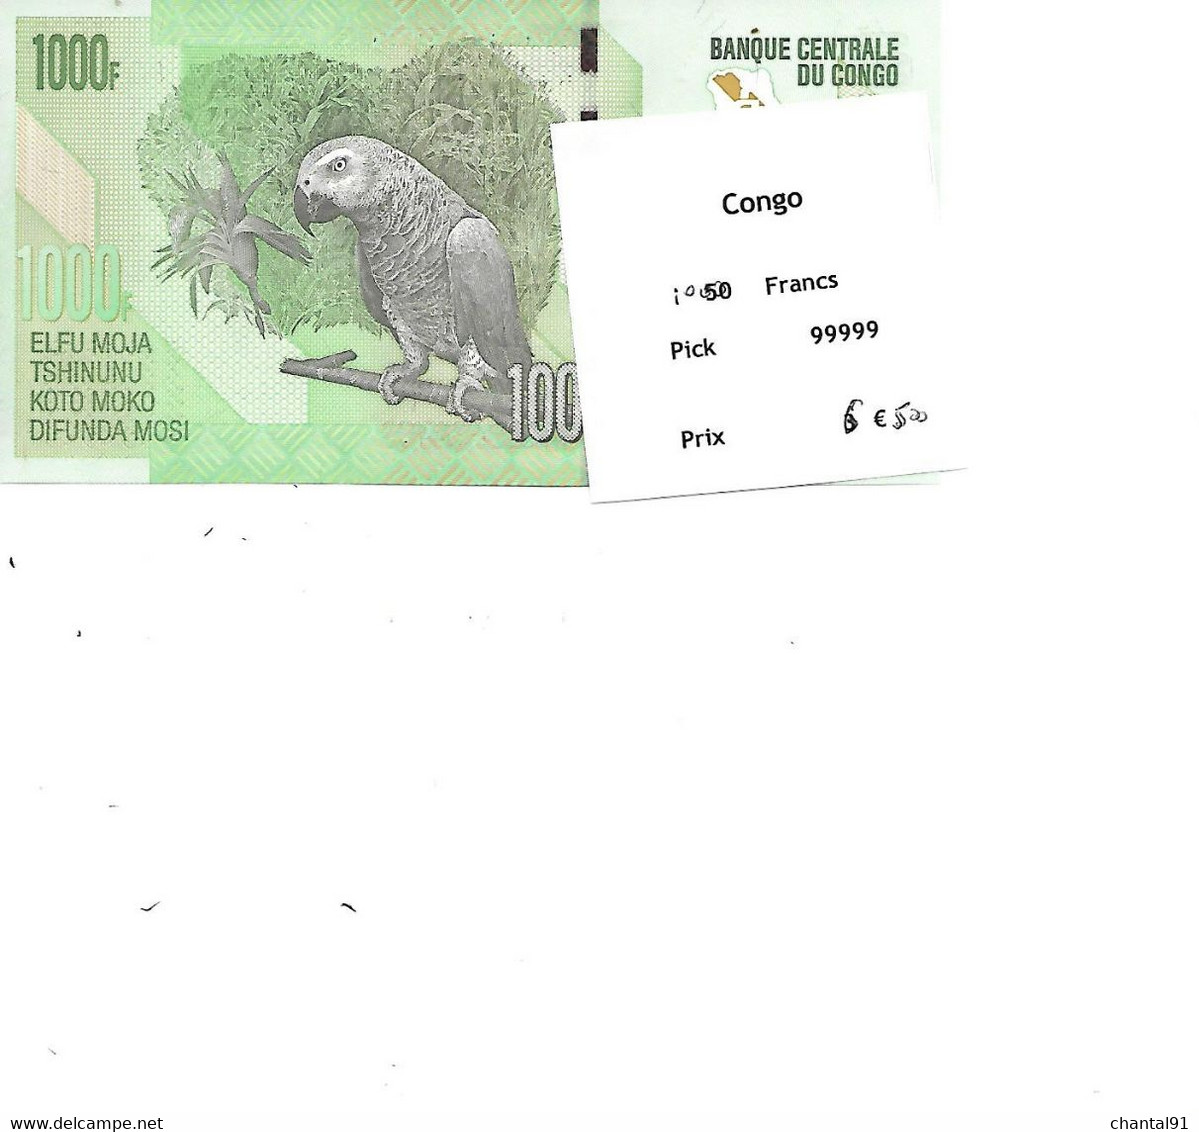 CONGO BILLET 1000 FRANCS PICK 99999 - Congo (Democratic Republic 1998)